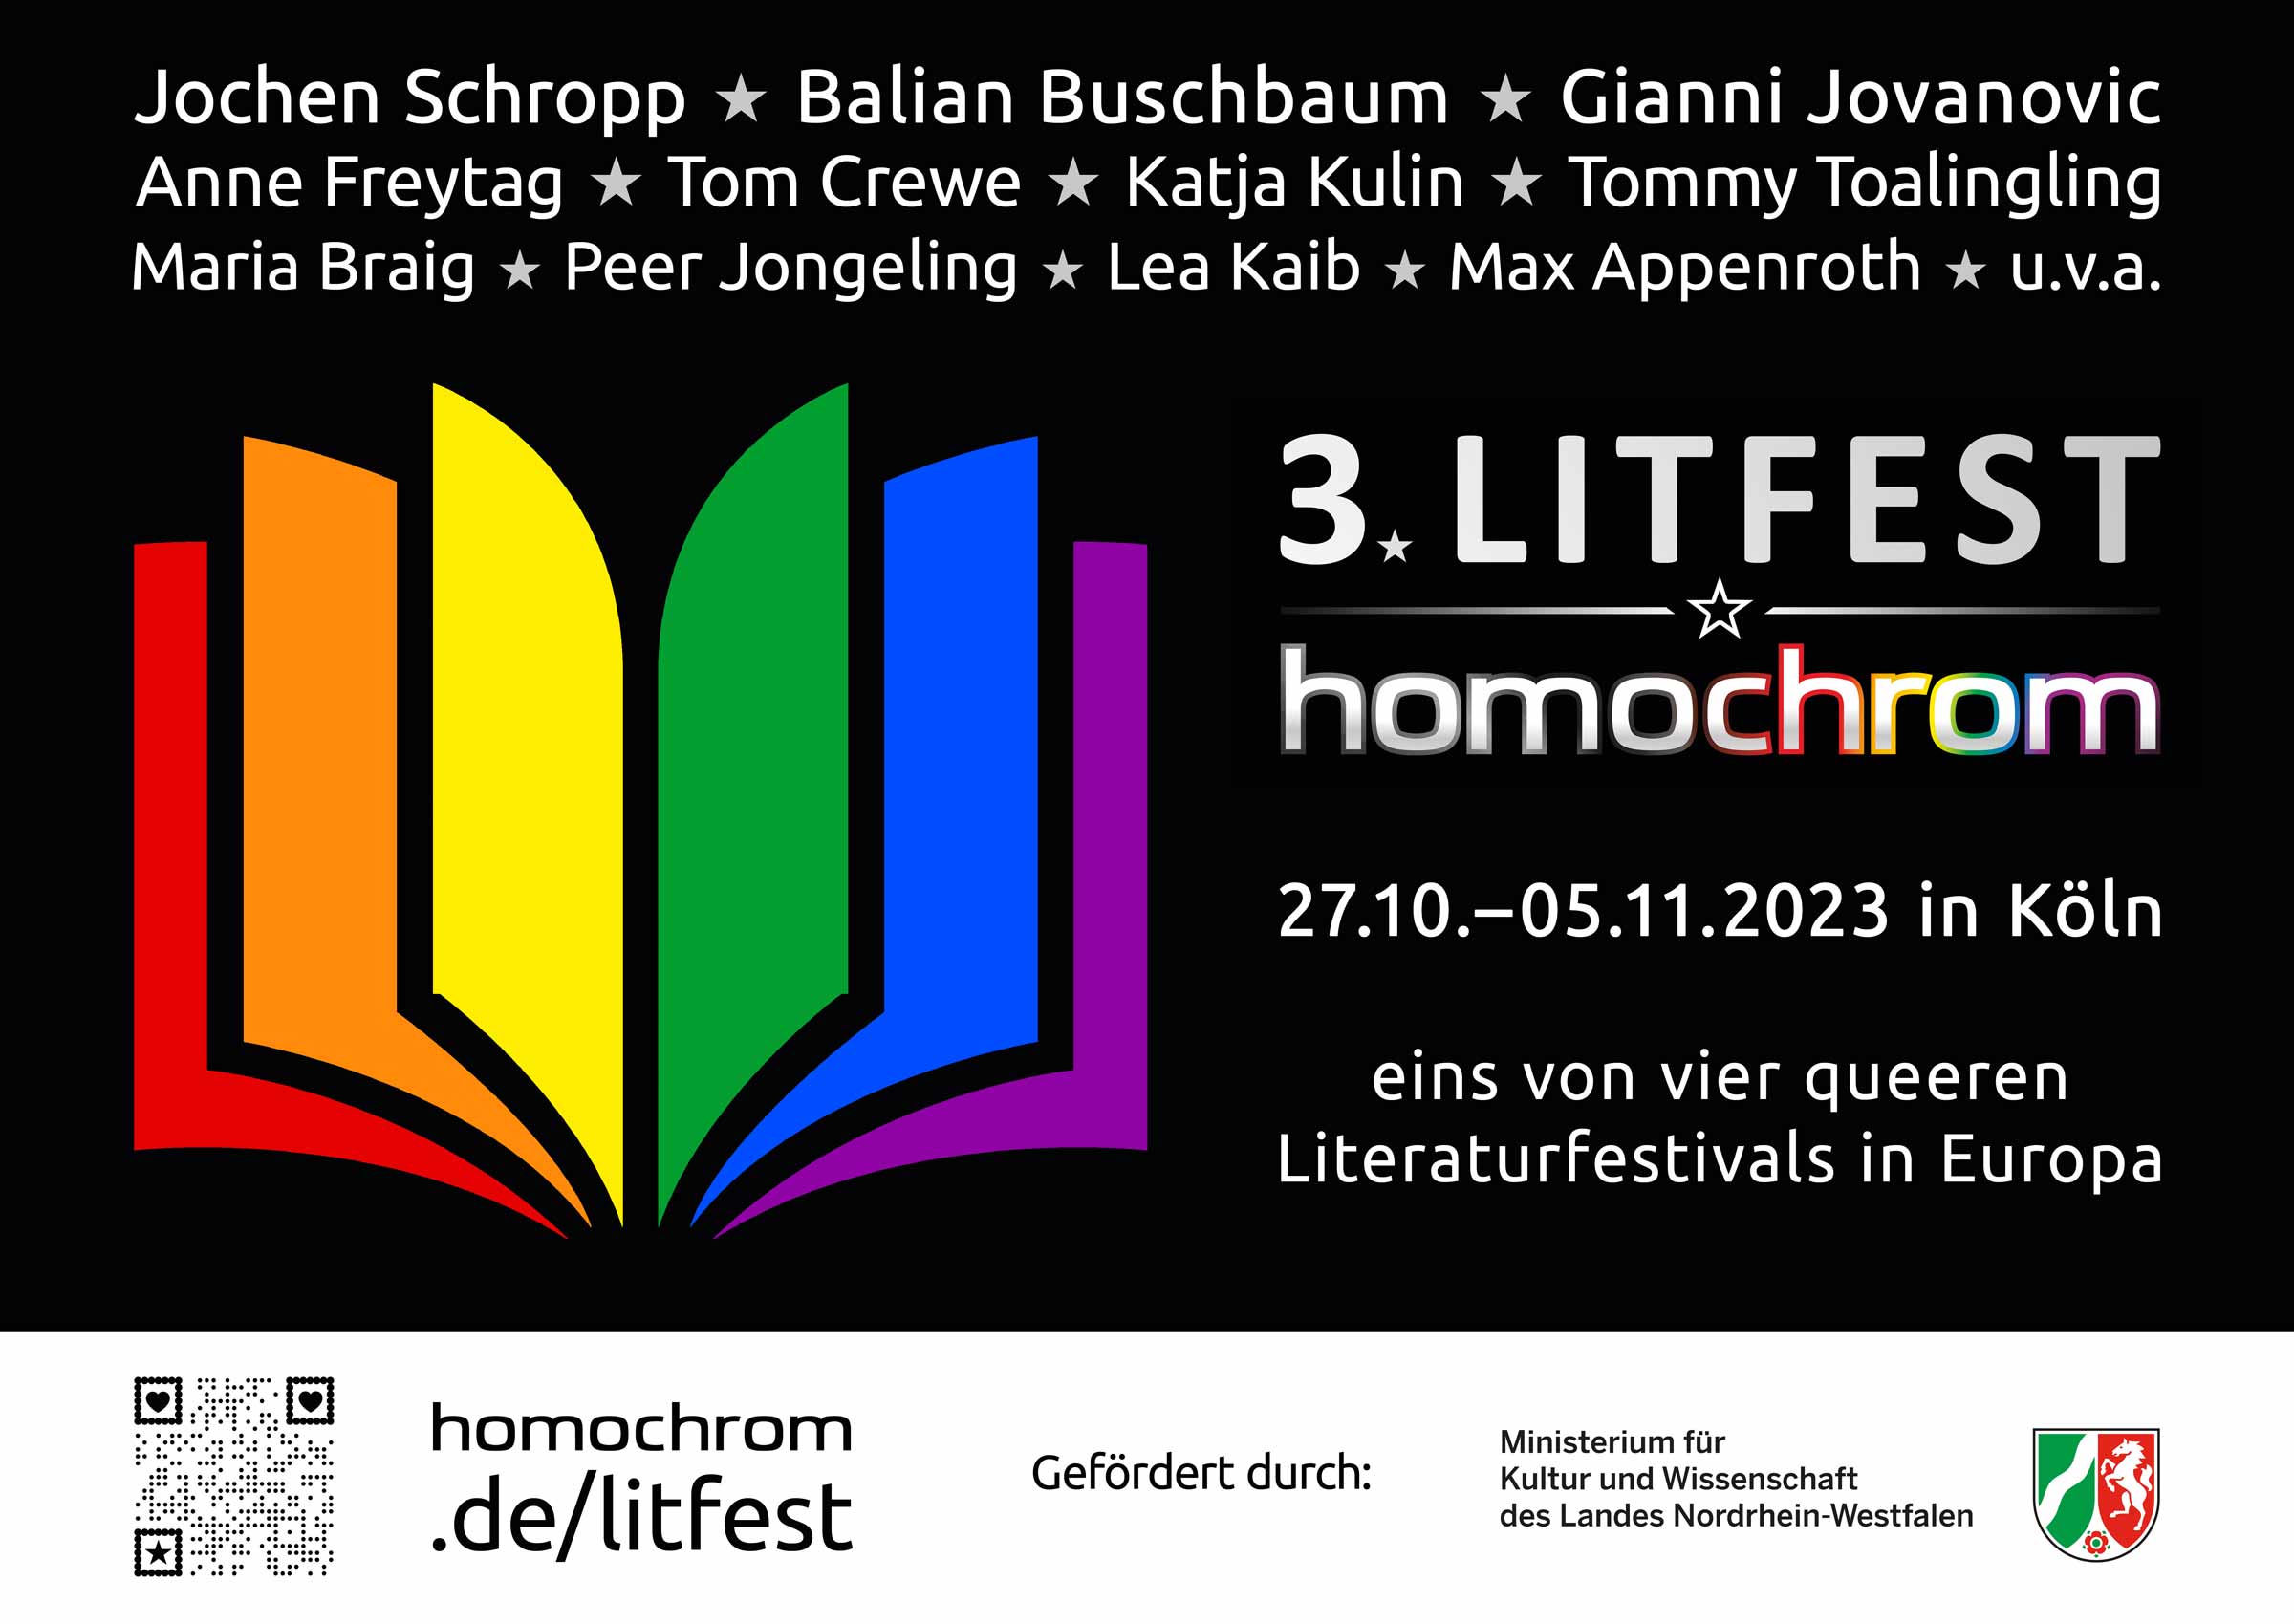 Plakat für das 3. Litfest homochrom vom 27.10.-05.11.2023 in Köln